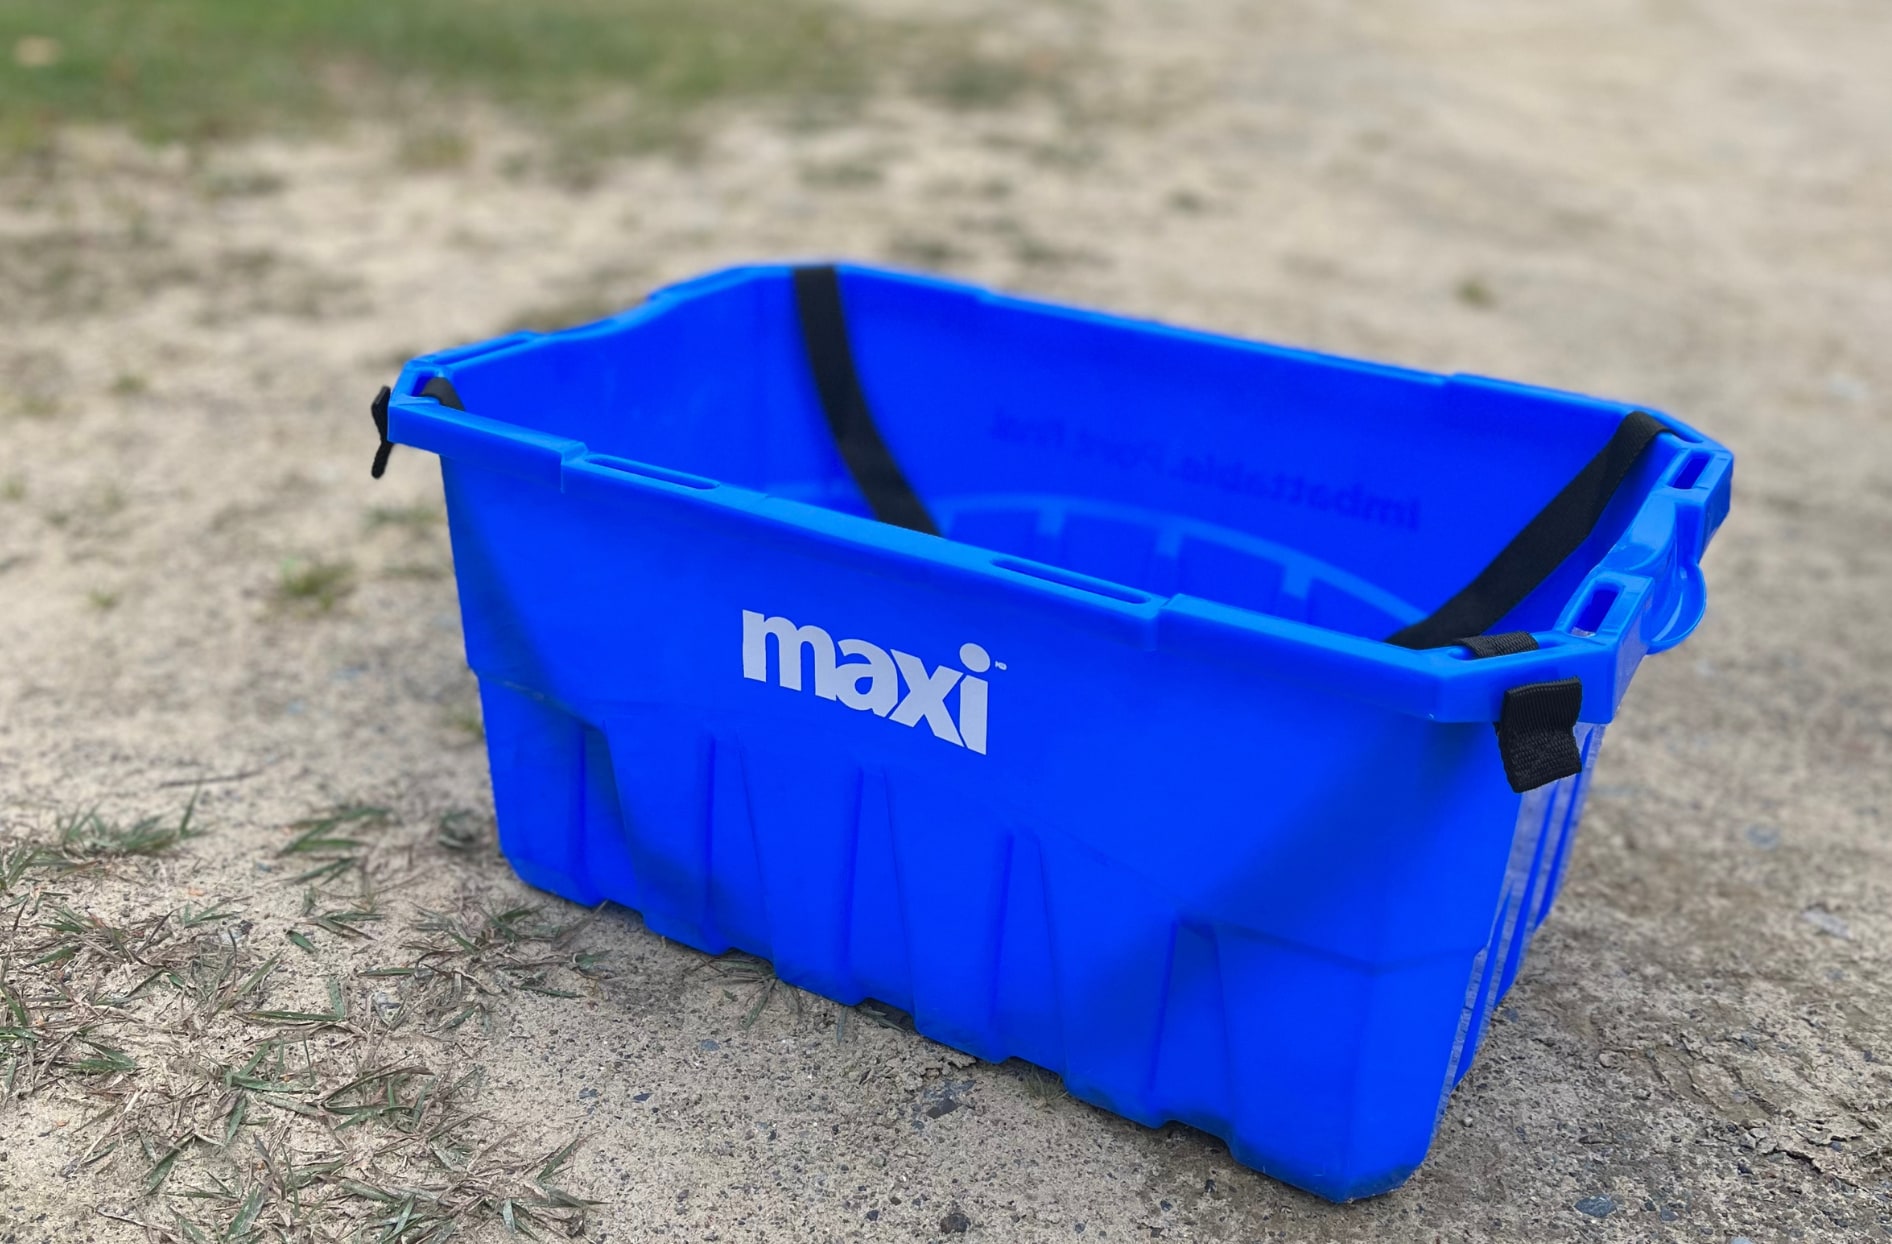 Une photo d’un panier d’achats réutilisable bleu avec le logo Maxi sur le côté déposé sur du sable à l’extérieur.